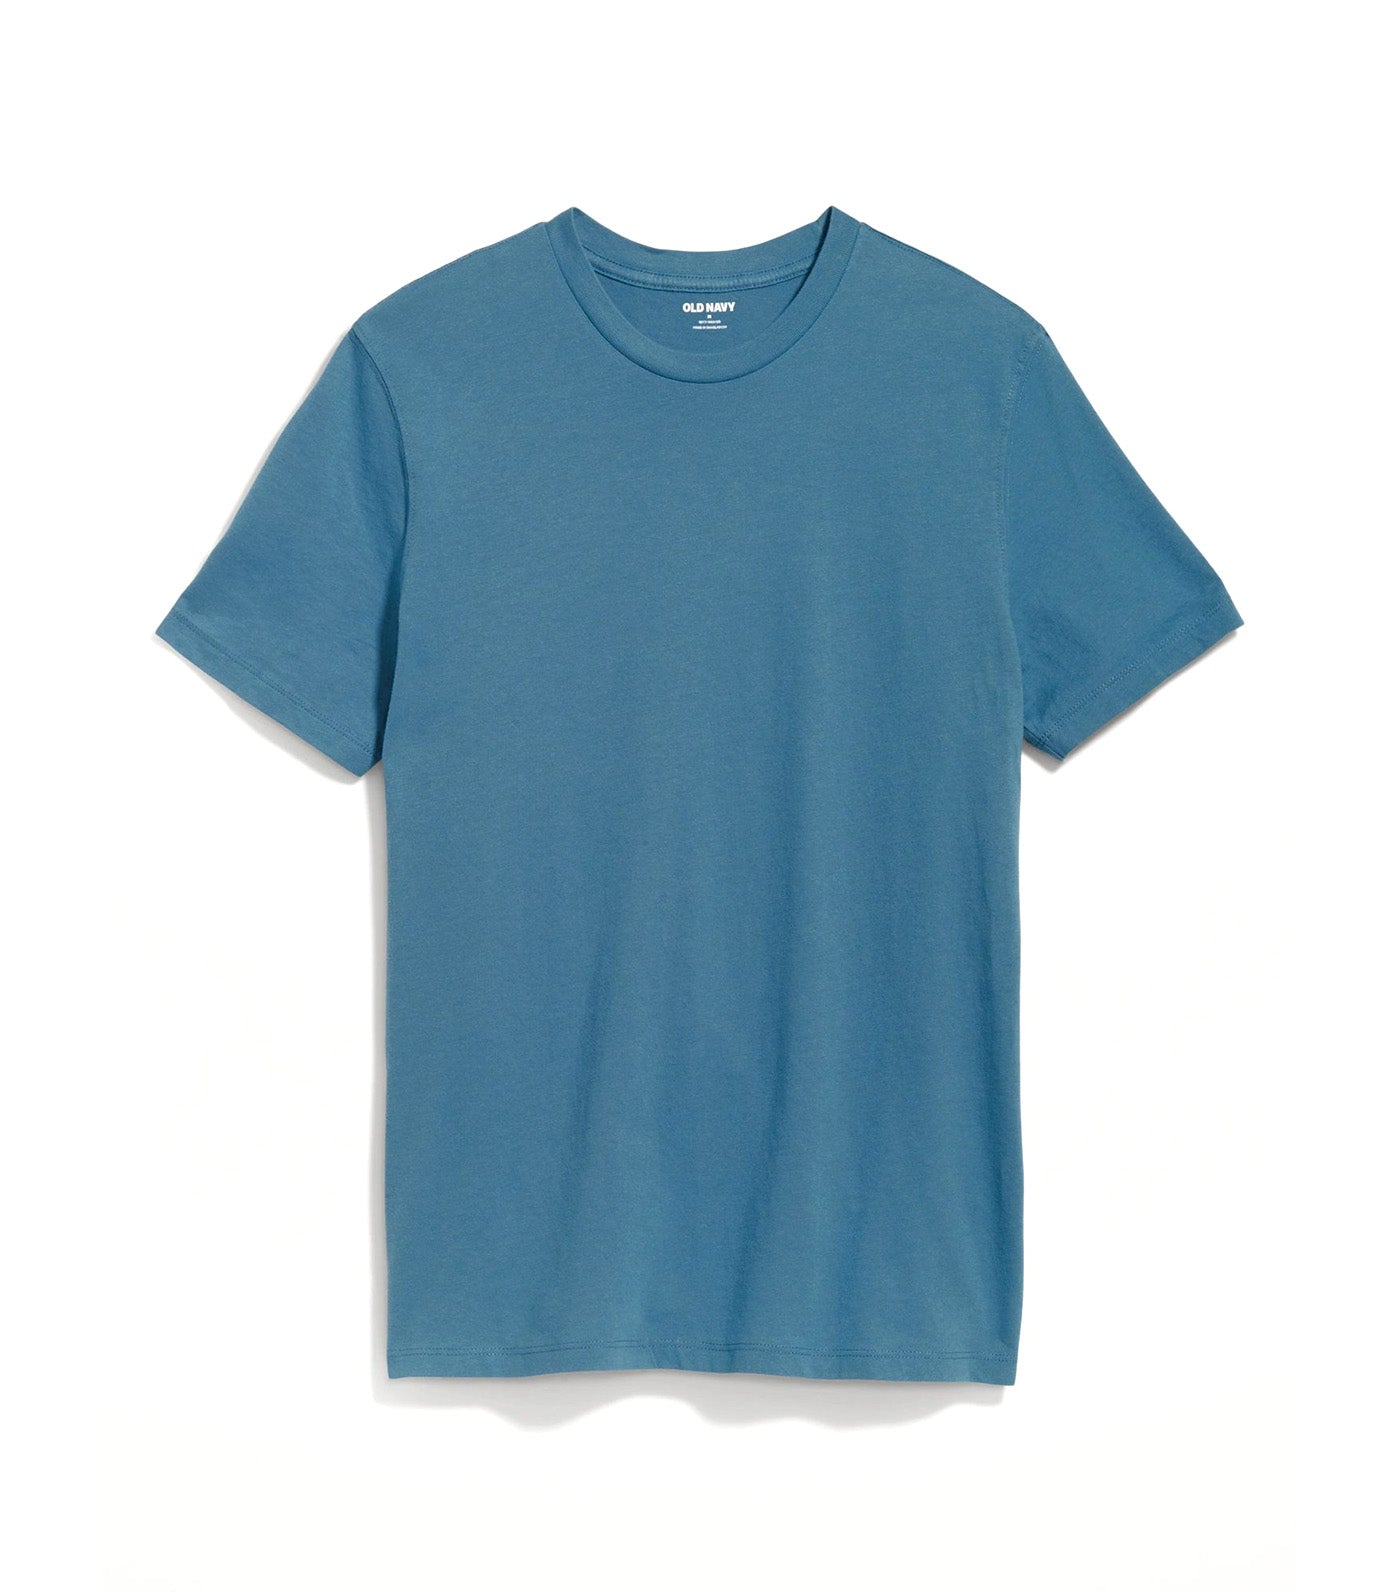 Soft-Washed V-Neck T-Shirt for Men